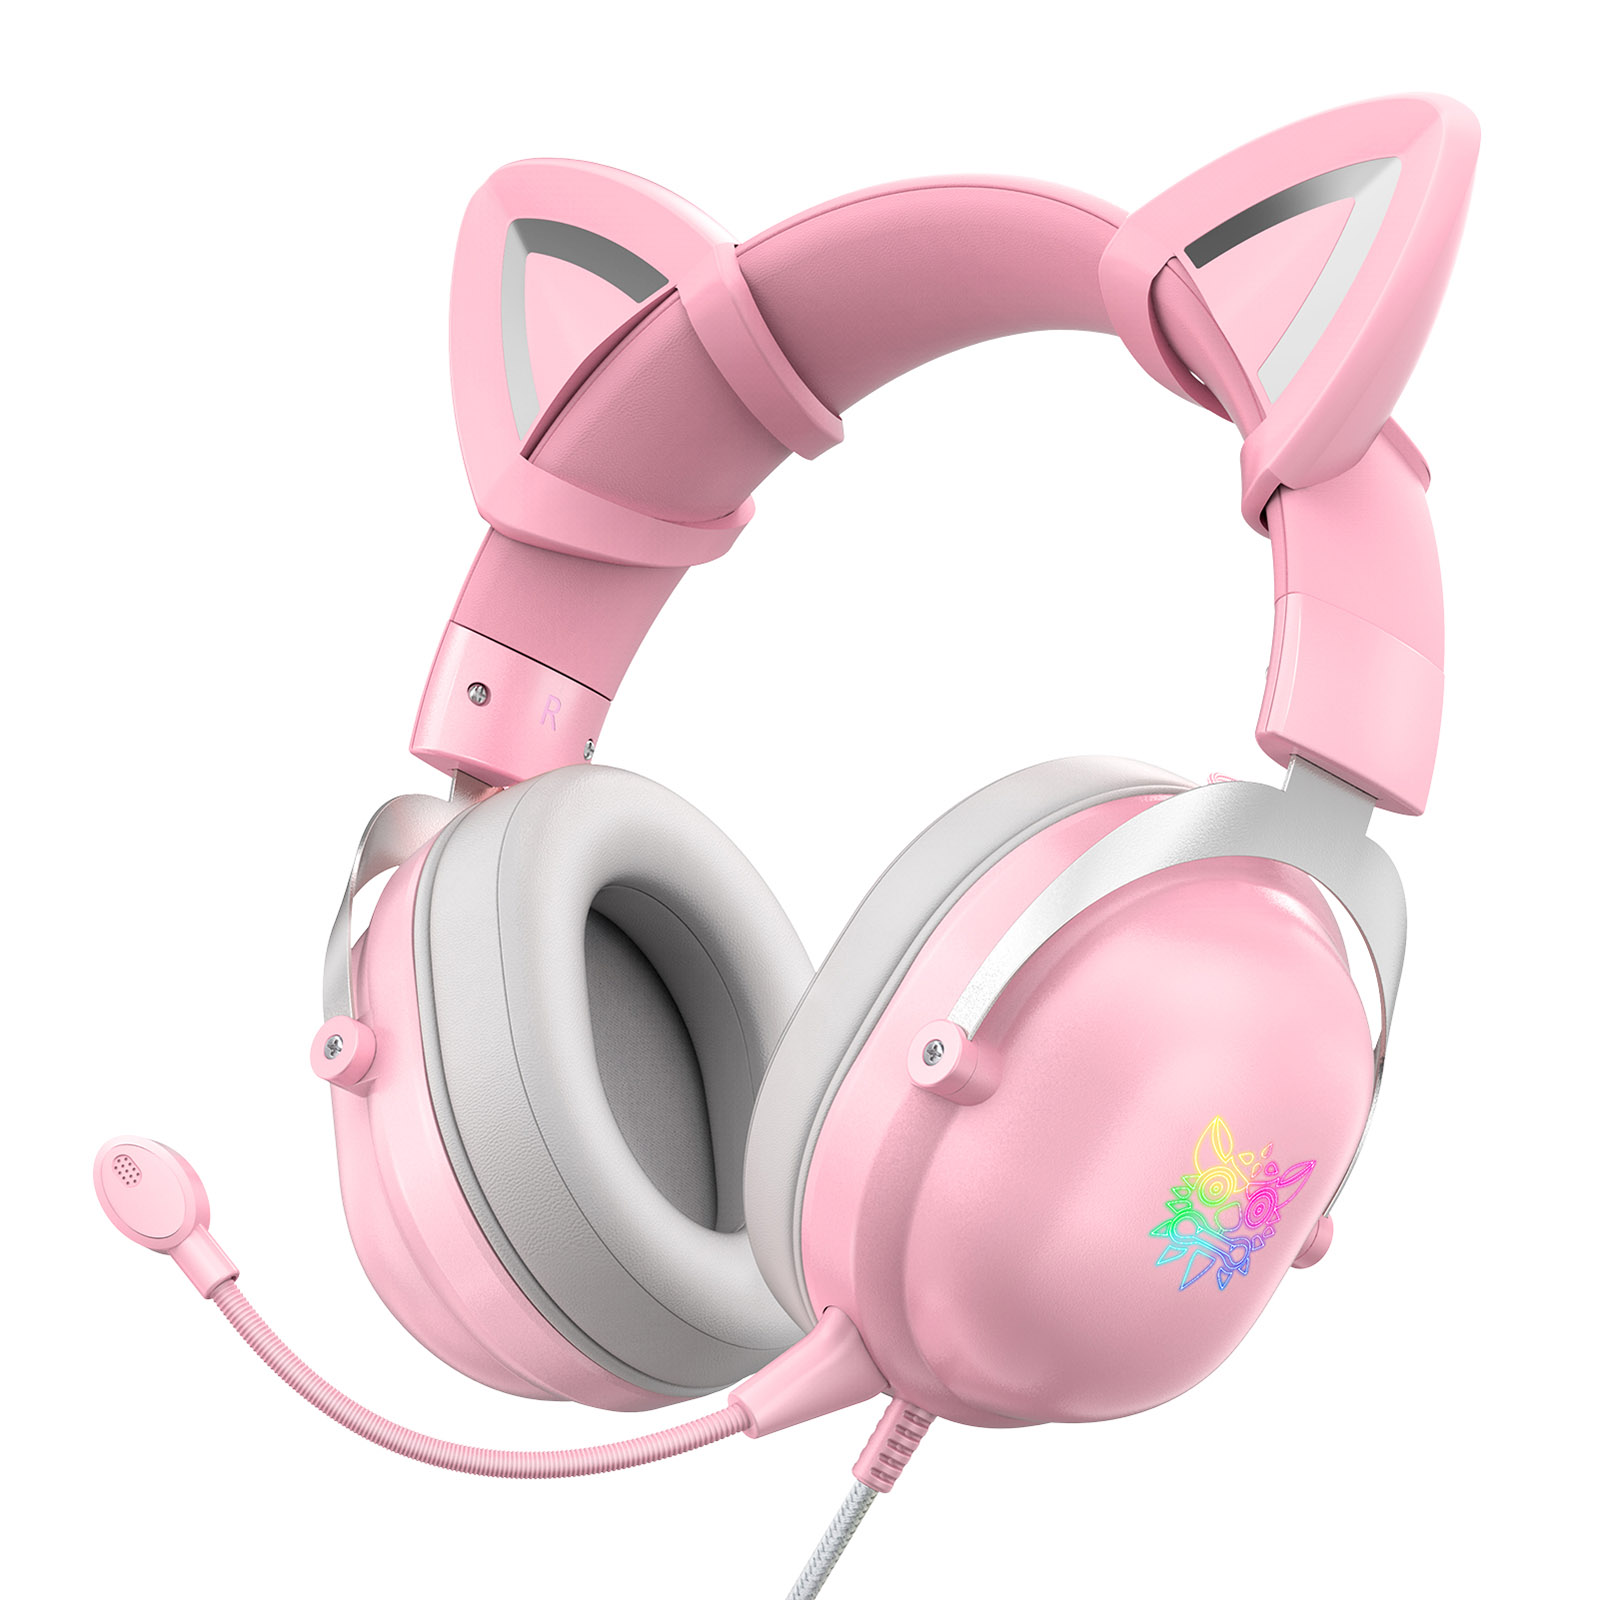 ONIKUMA X11 ชุดหูฟังเกมมิ่งสีชมพูพร้อมหูแมวแบบถอดได้